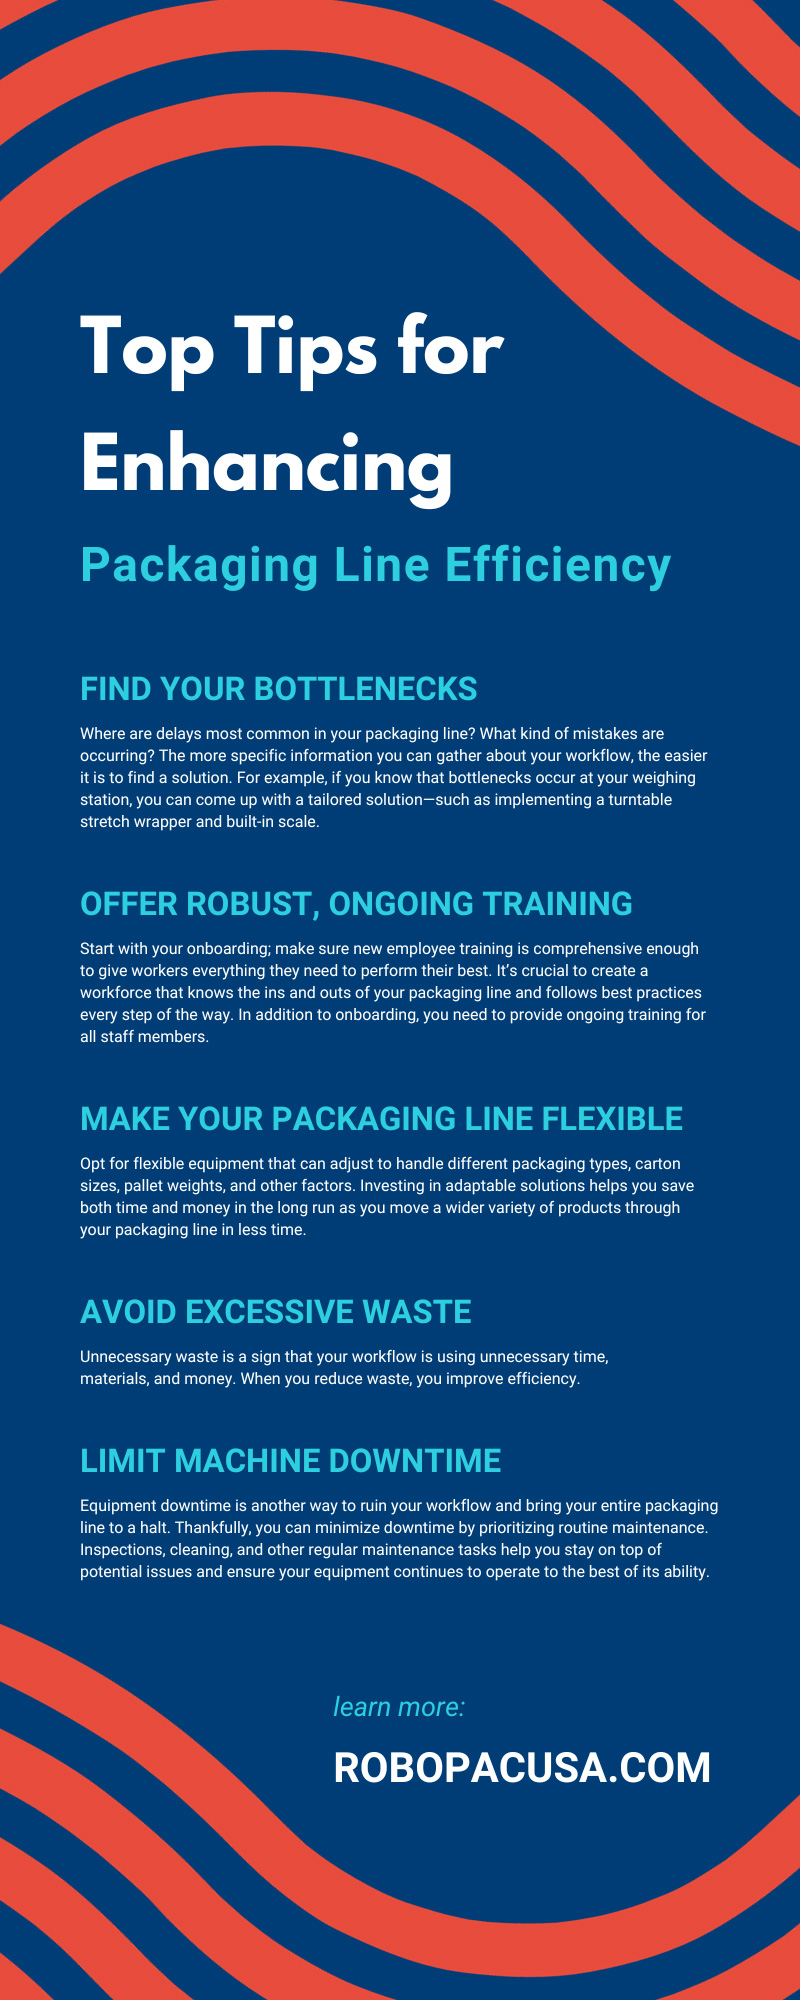 Top Tips for Enhancing Packaging Line Efficiency